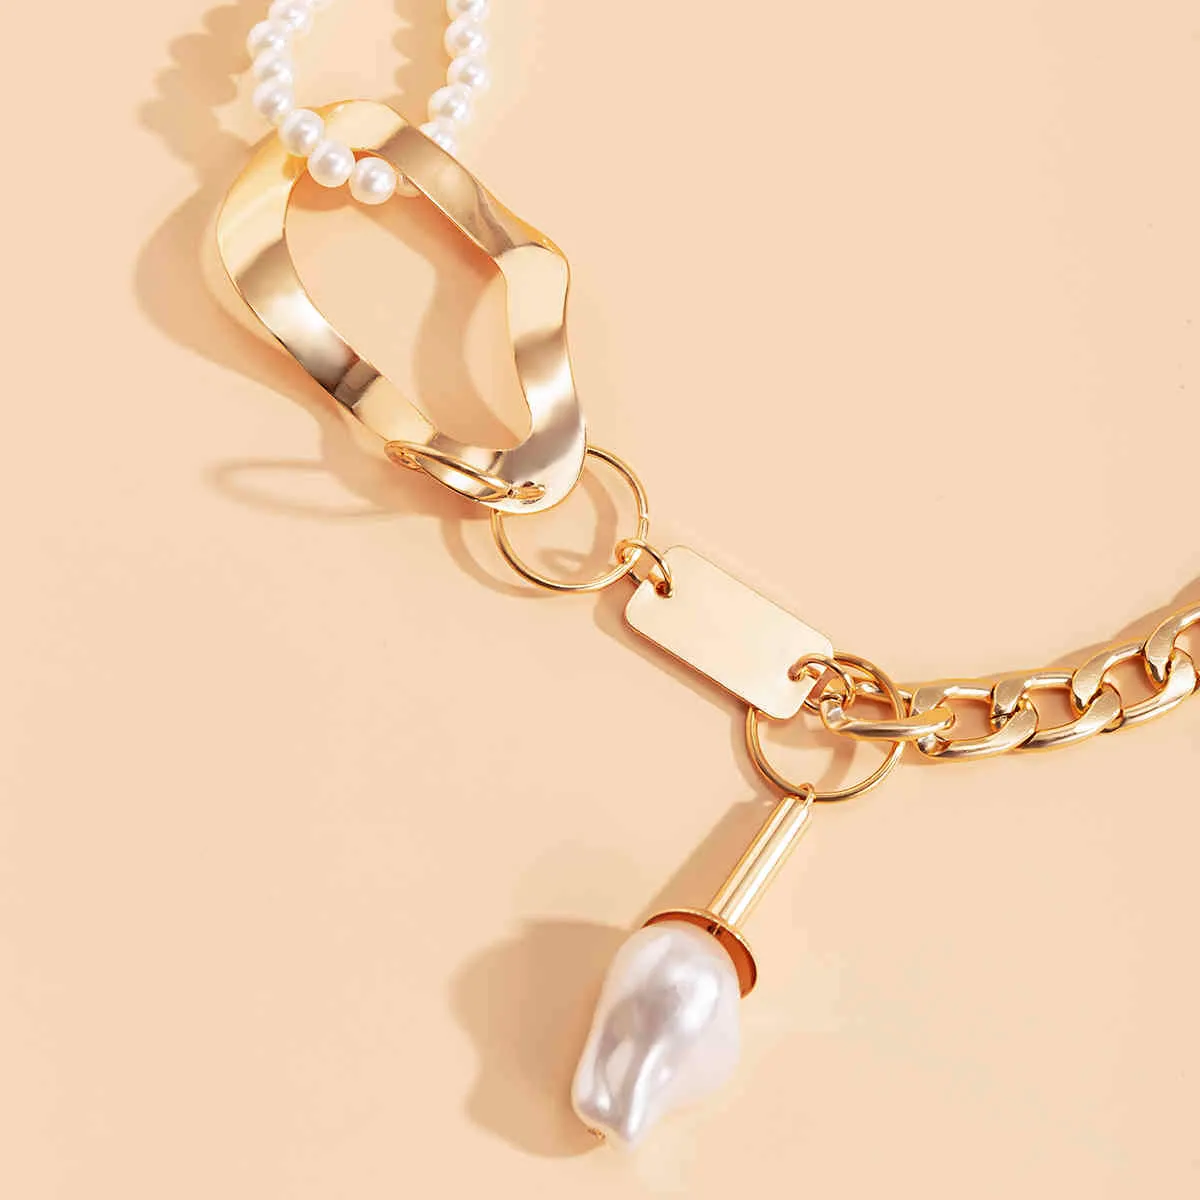 Unique grosse chaîne épaisse collier grand pendentif baroque collier exagéré géométrique perle perle tour de cou bijoux femmes